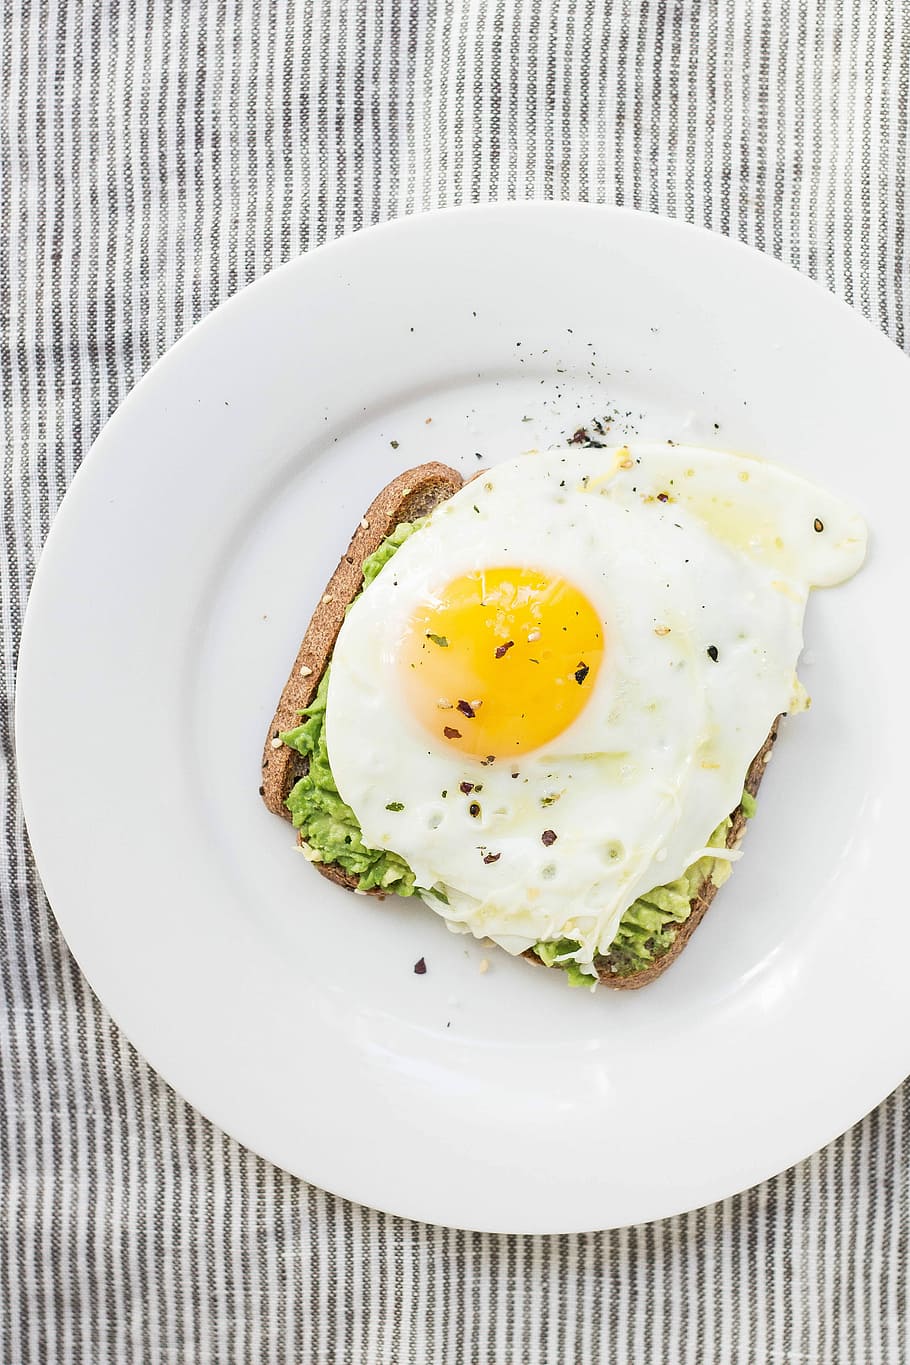 sunny side up egg, lettuce, bread on white ceramic plate, sunny-side egg on bread, HD wallpaper